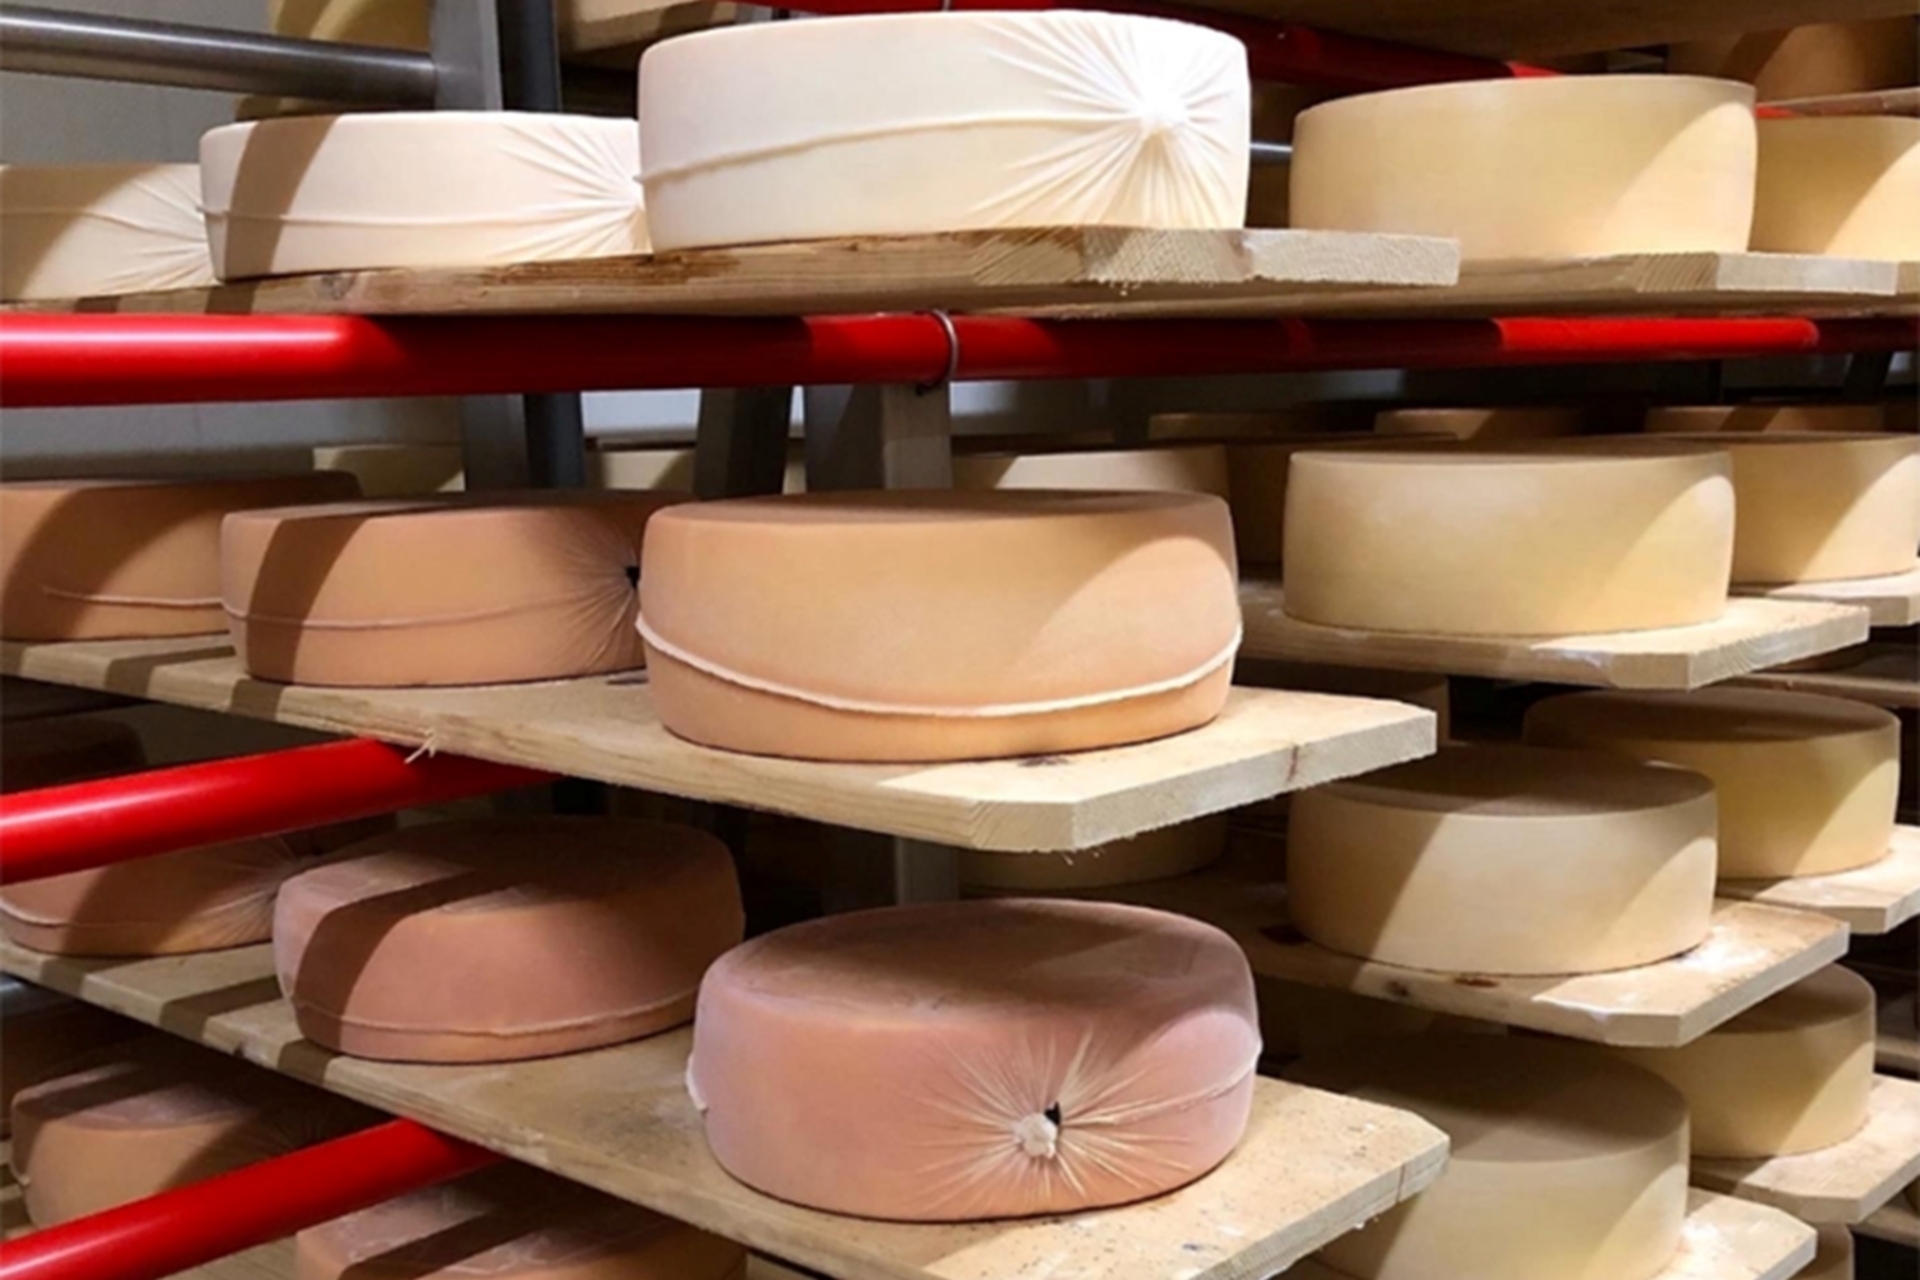 Formatge: formatges acabats d'envasar envellits fins a tres mesos i embolicats amb la nova tècnica desenvolupada per Agroscope a Suïssa.